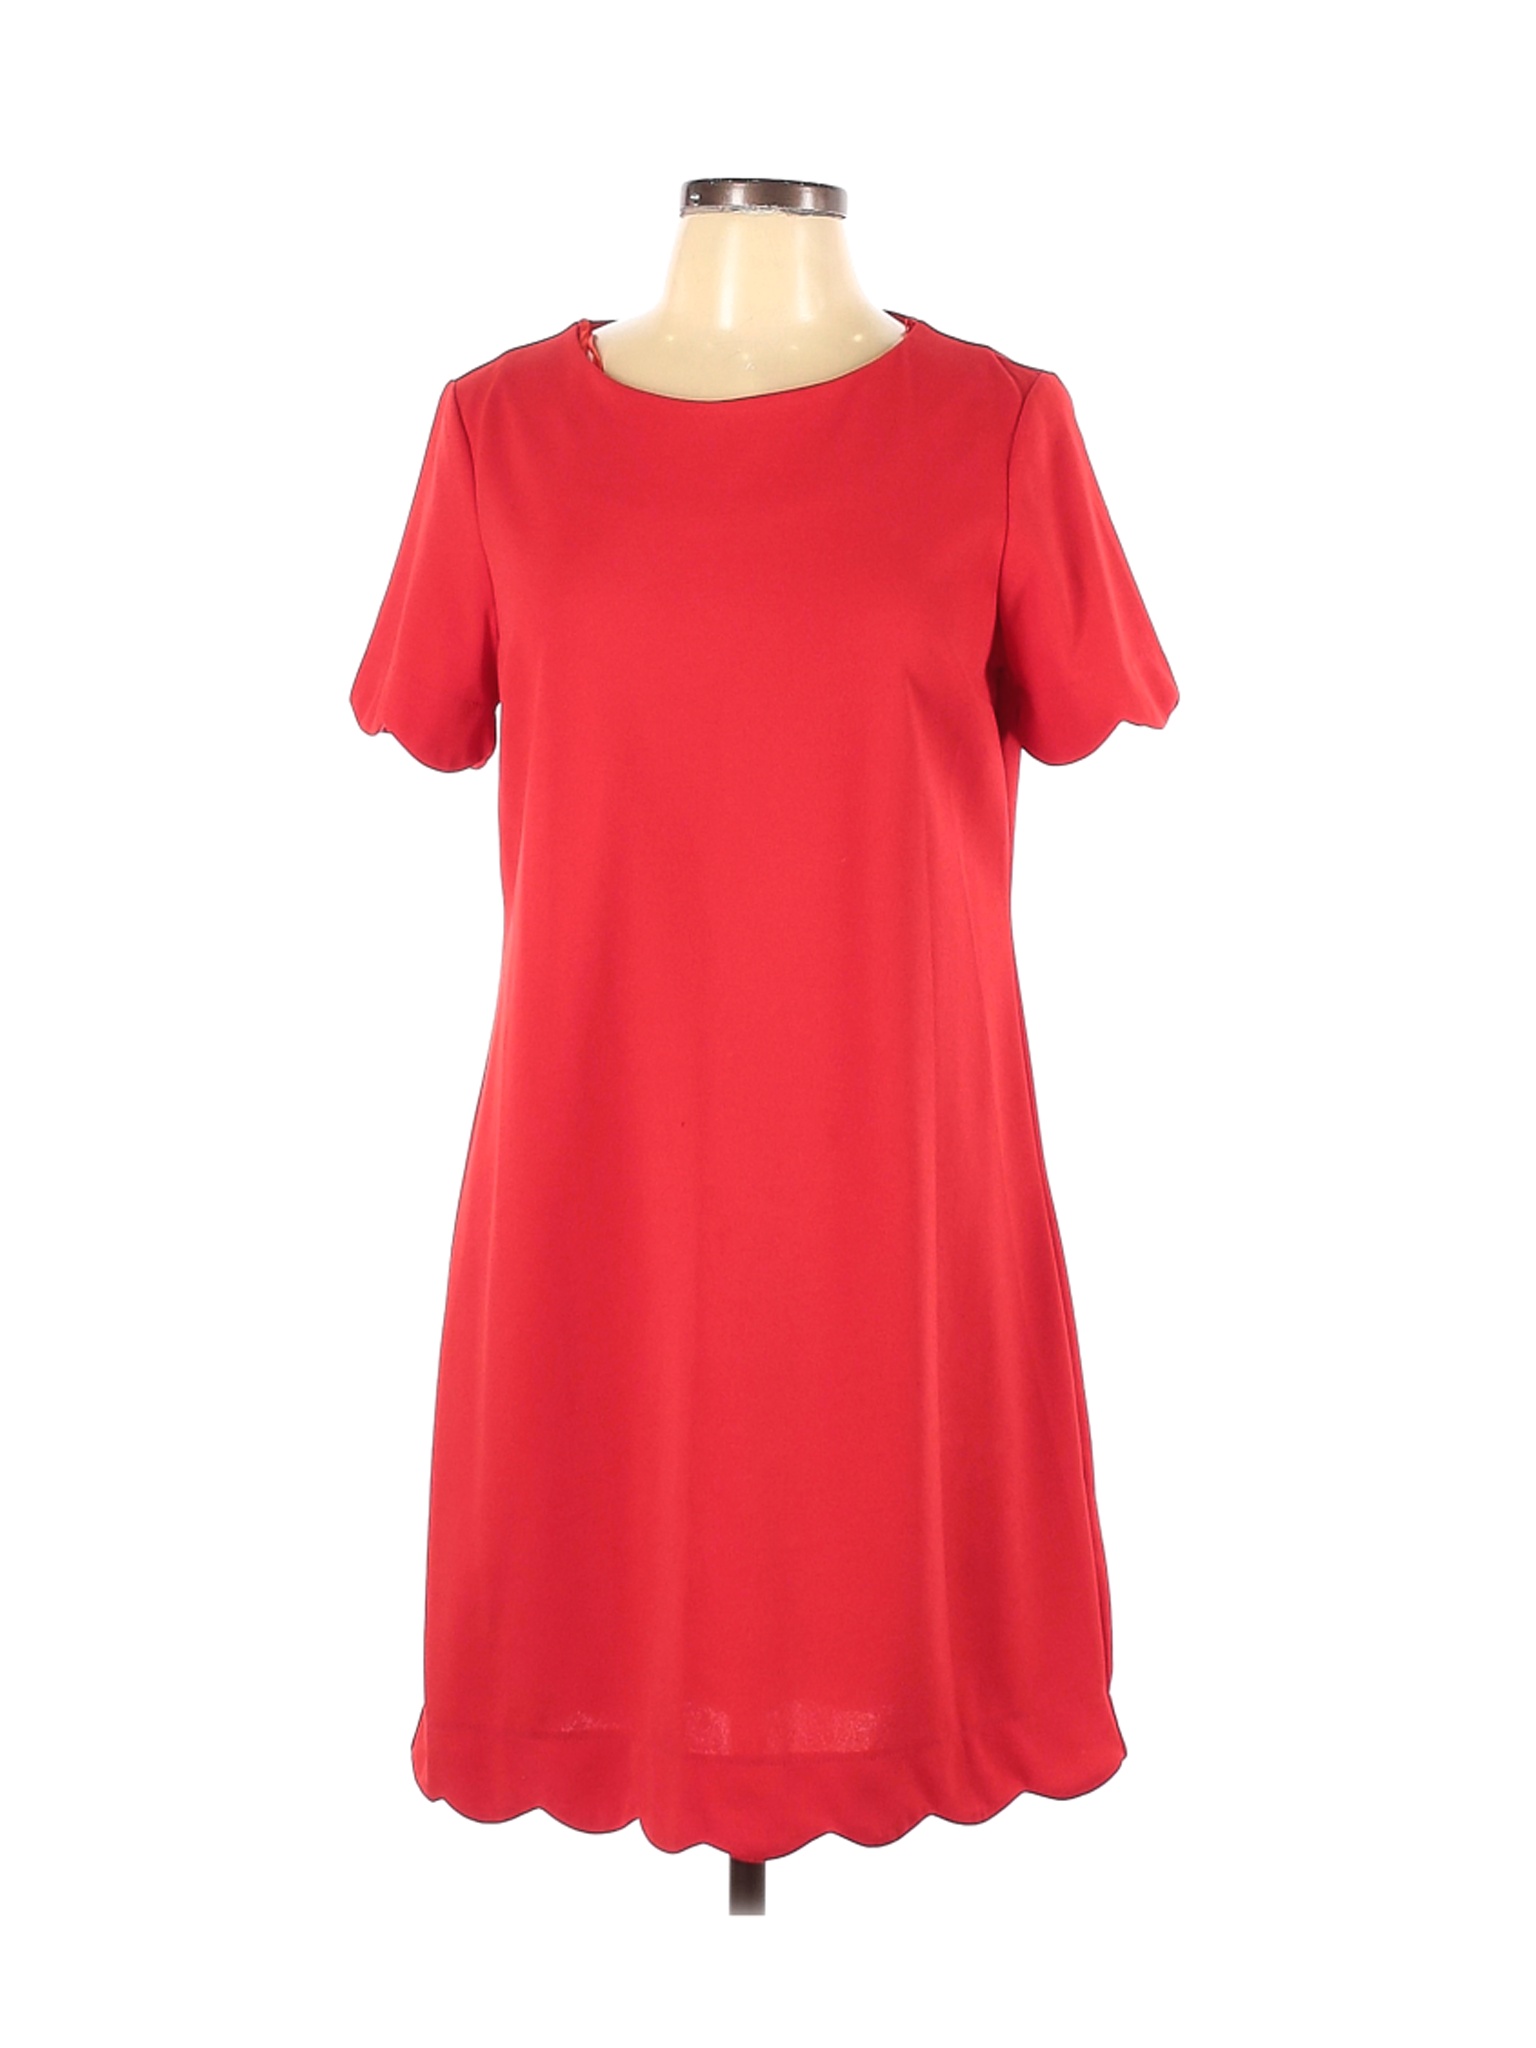 Monteau Women Red Casual Dress L | eBay